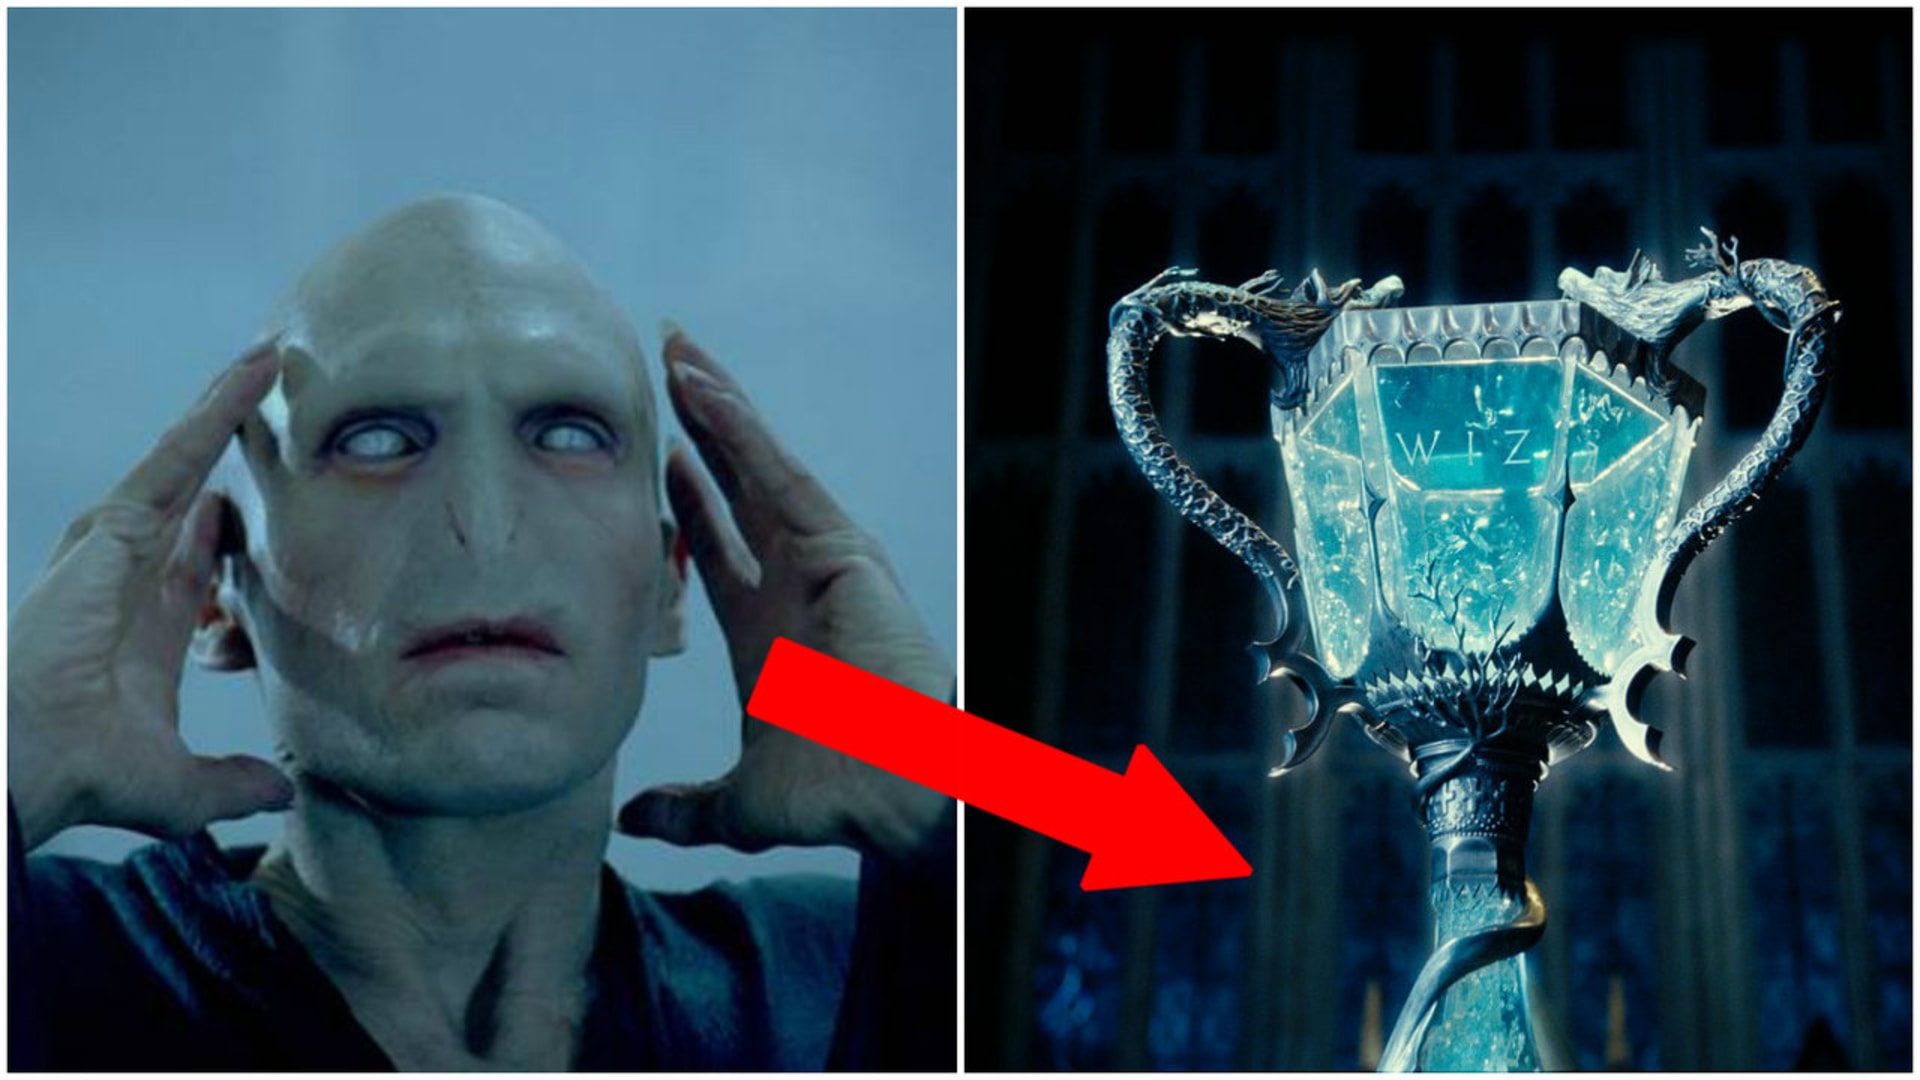 Co měl Voldemort opravdu v plánu?